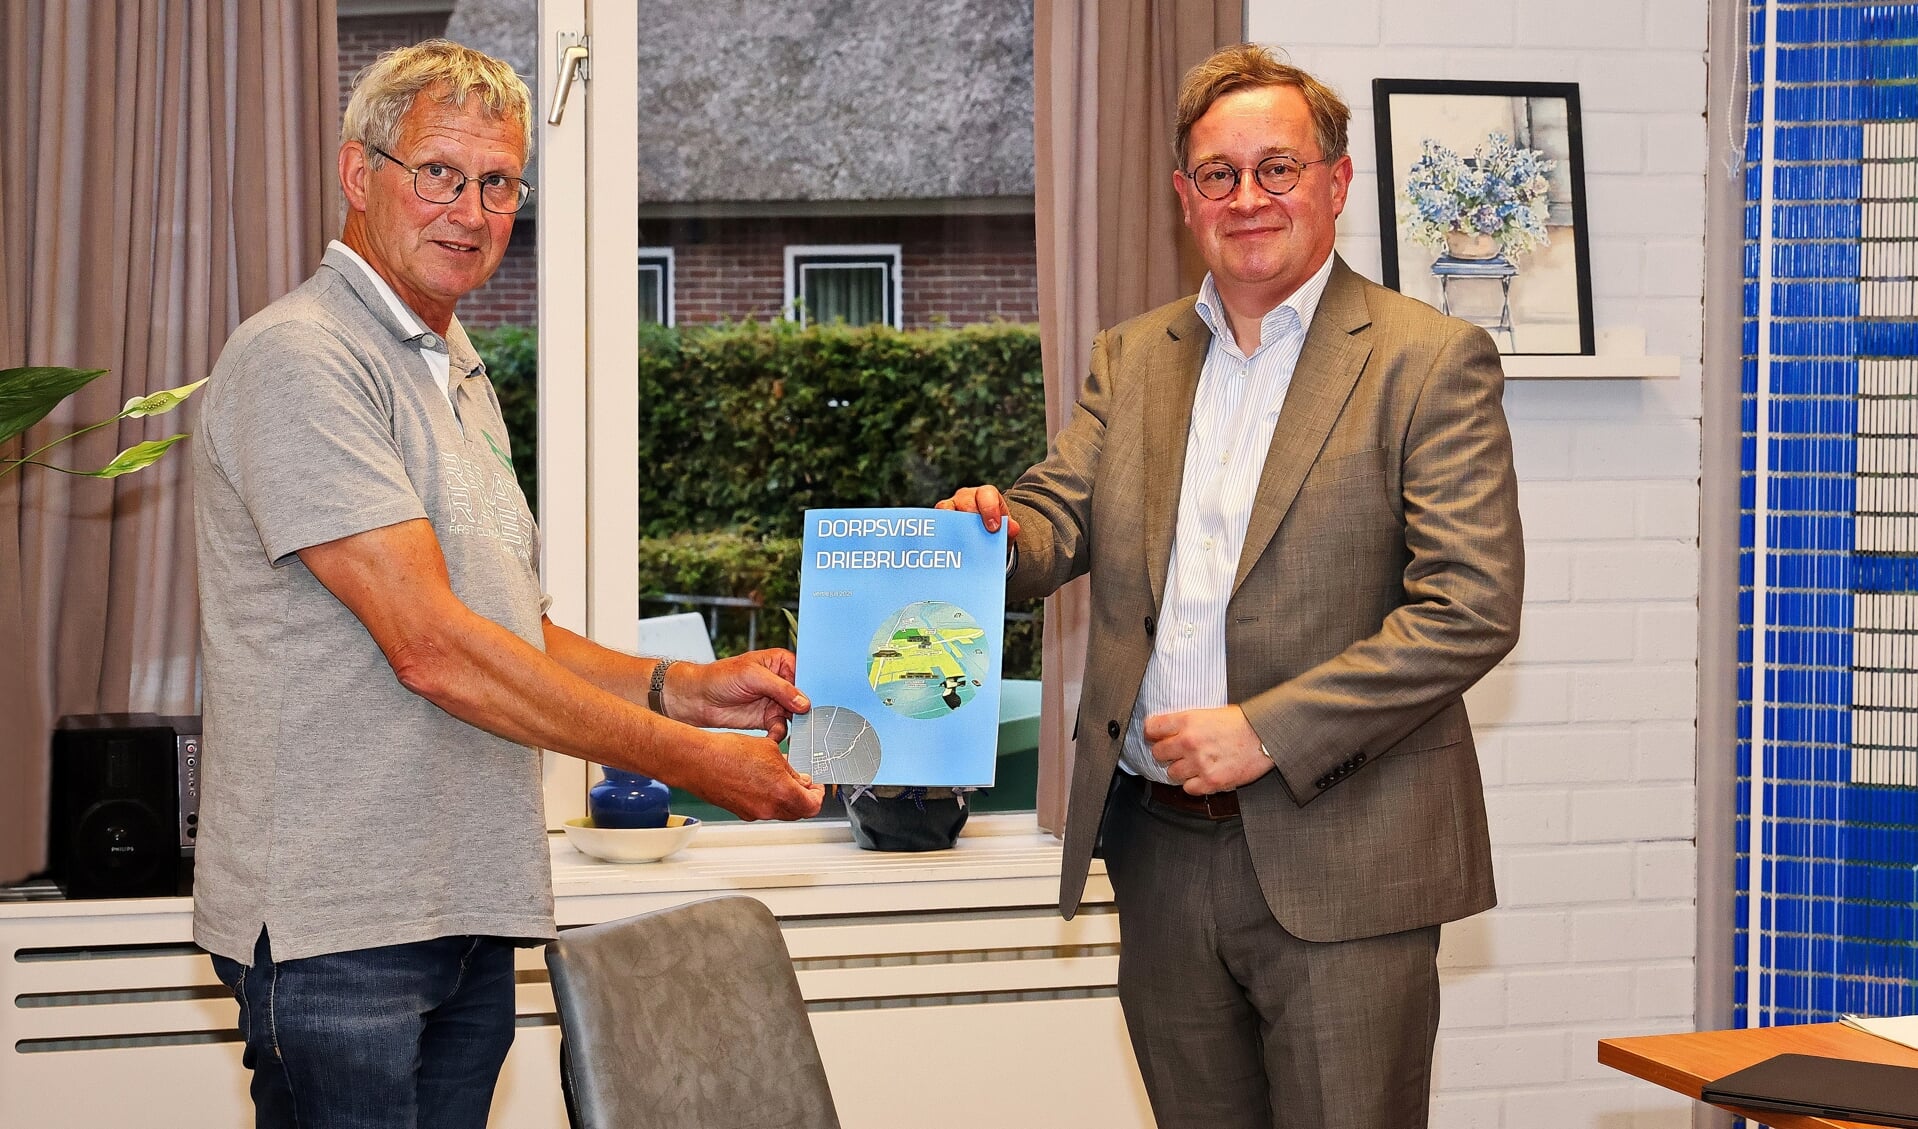 Joop van den Nouland overhandigt de dorpsvisie aan wethouder Jan Leendert van den Heuvel.